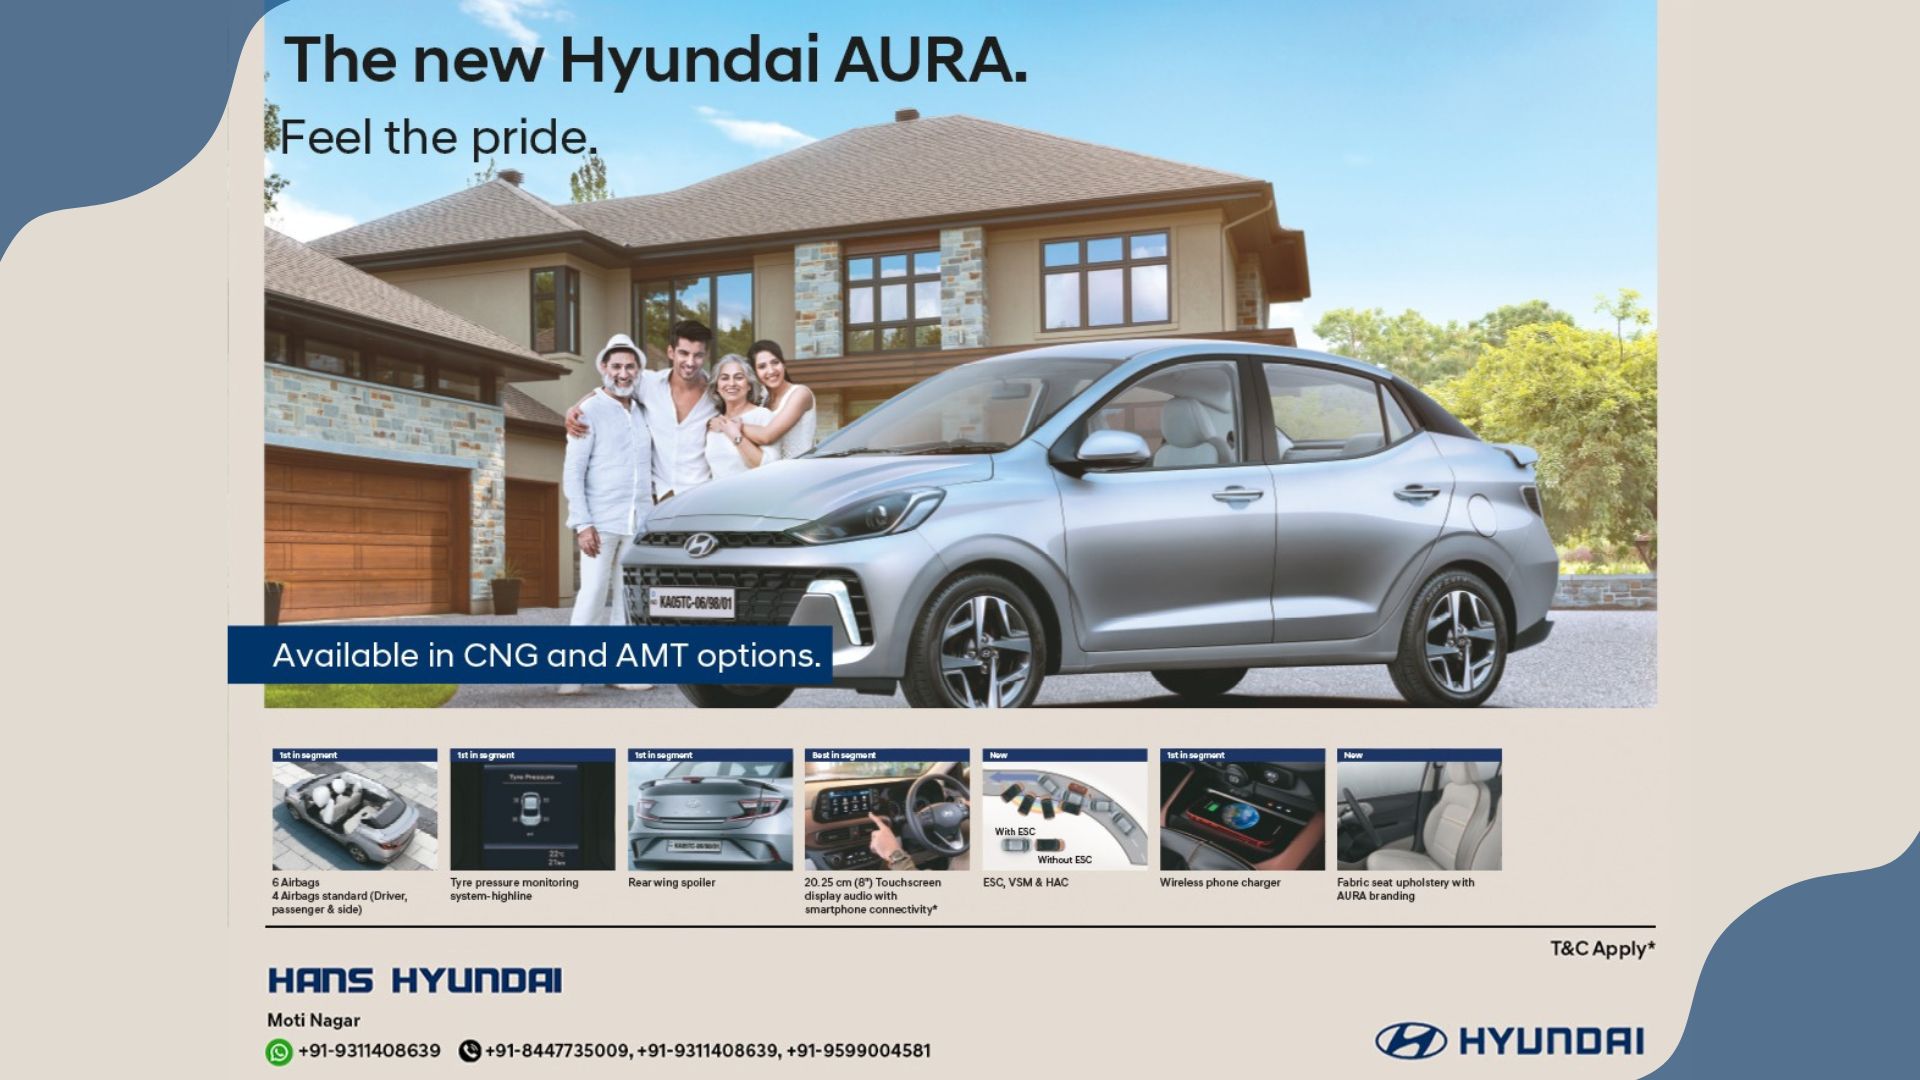 Hyundai Aura